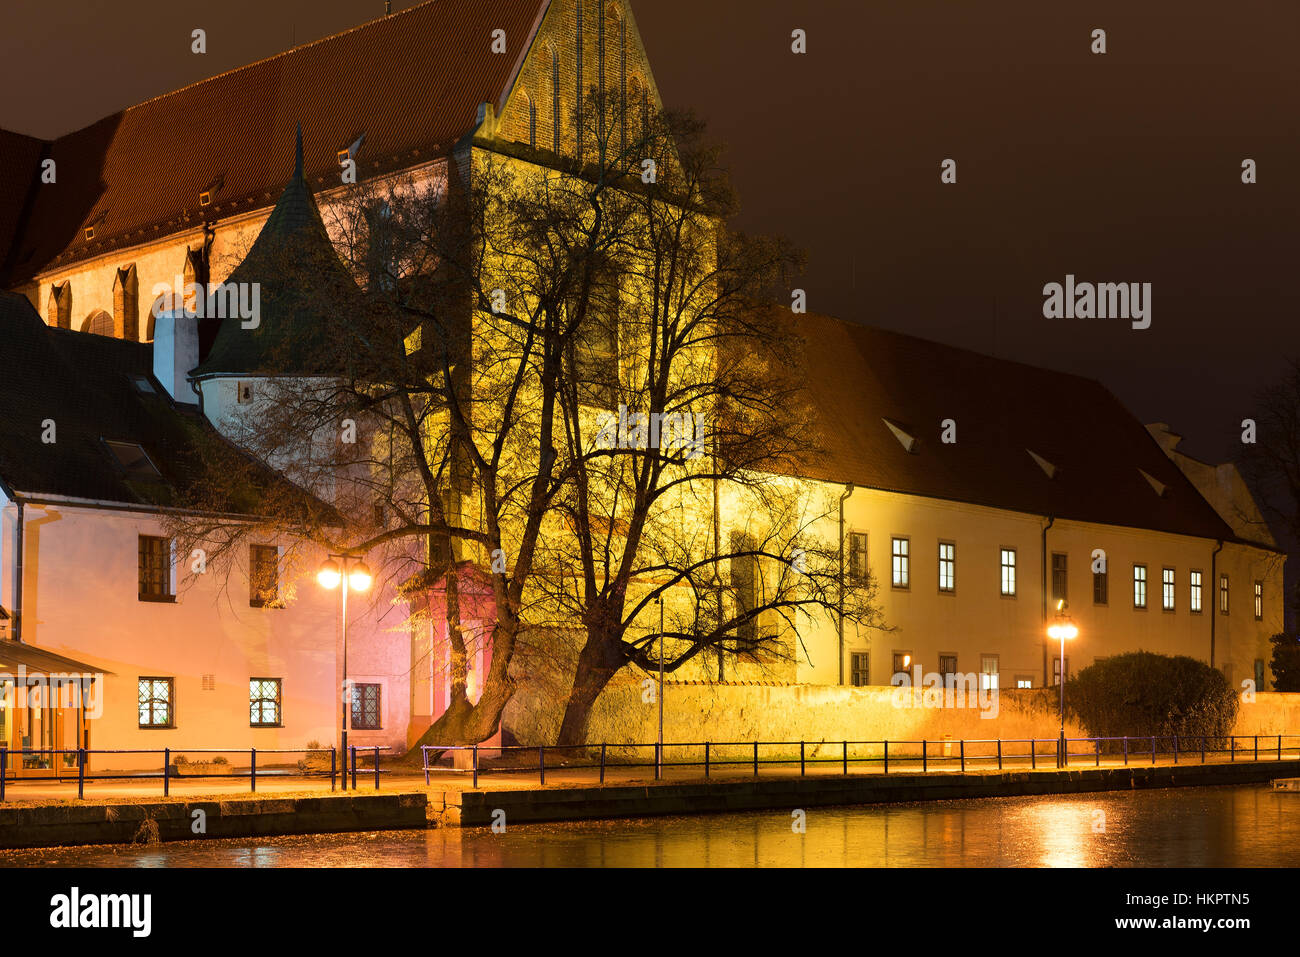 Night architecture in the city. Old church on the bank of river. České Budějovice. Stock Photo